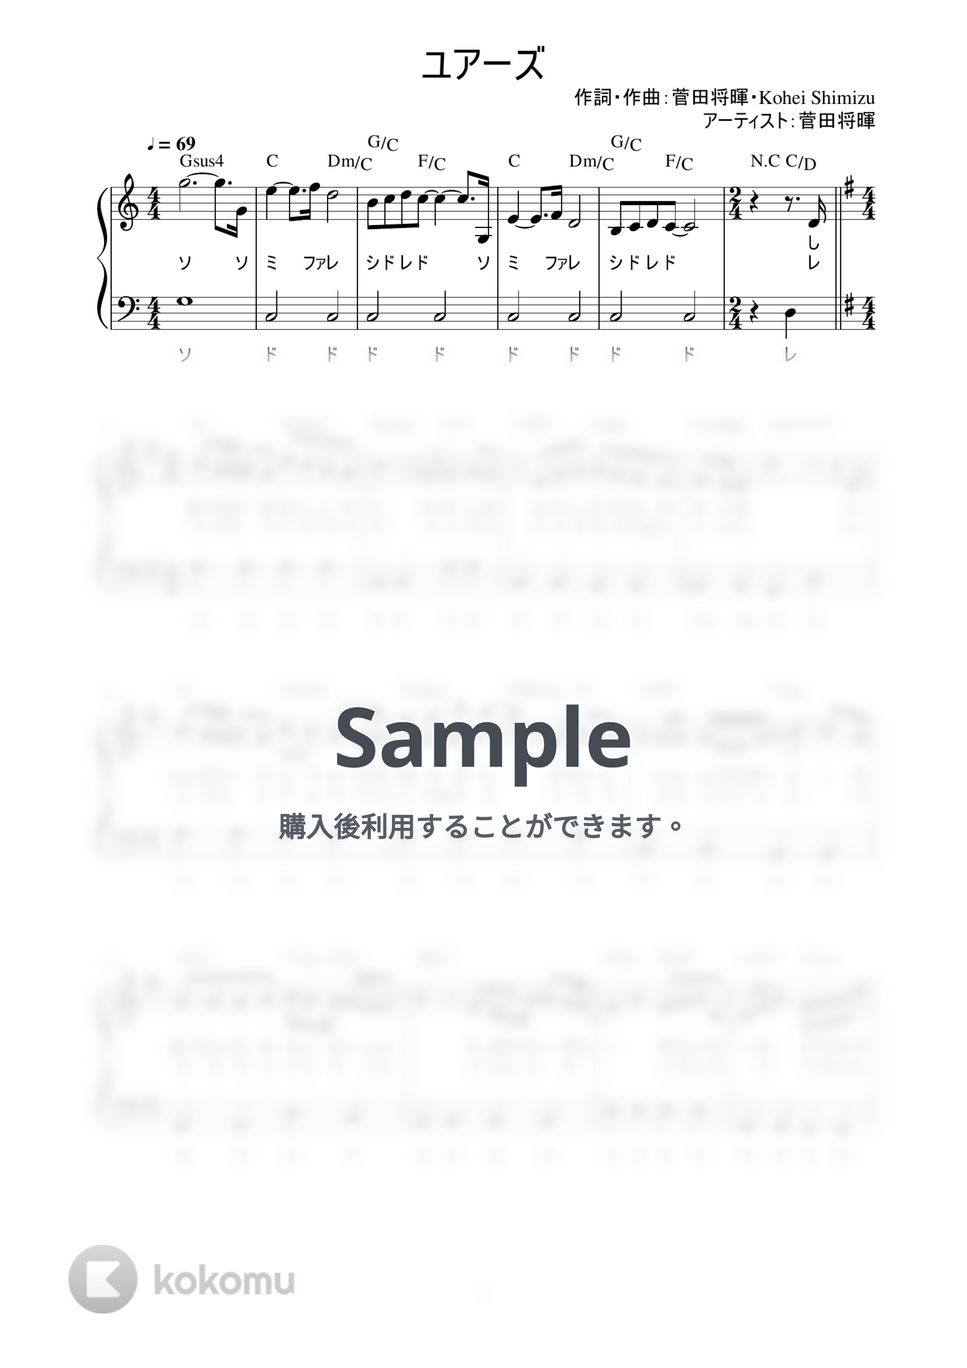 菅田将暉 - ユアーズ (かんたん / 歌詞付き / ドレミ付き / 初心者) by piano.tokyo